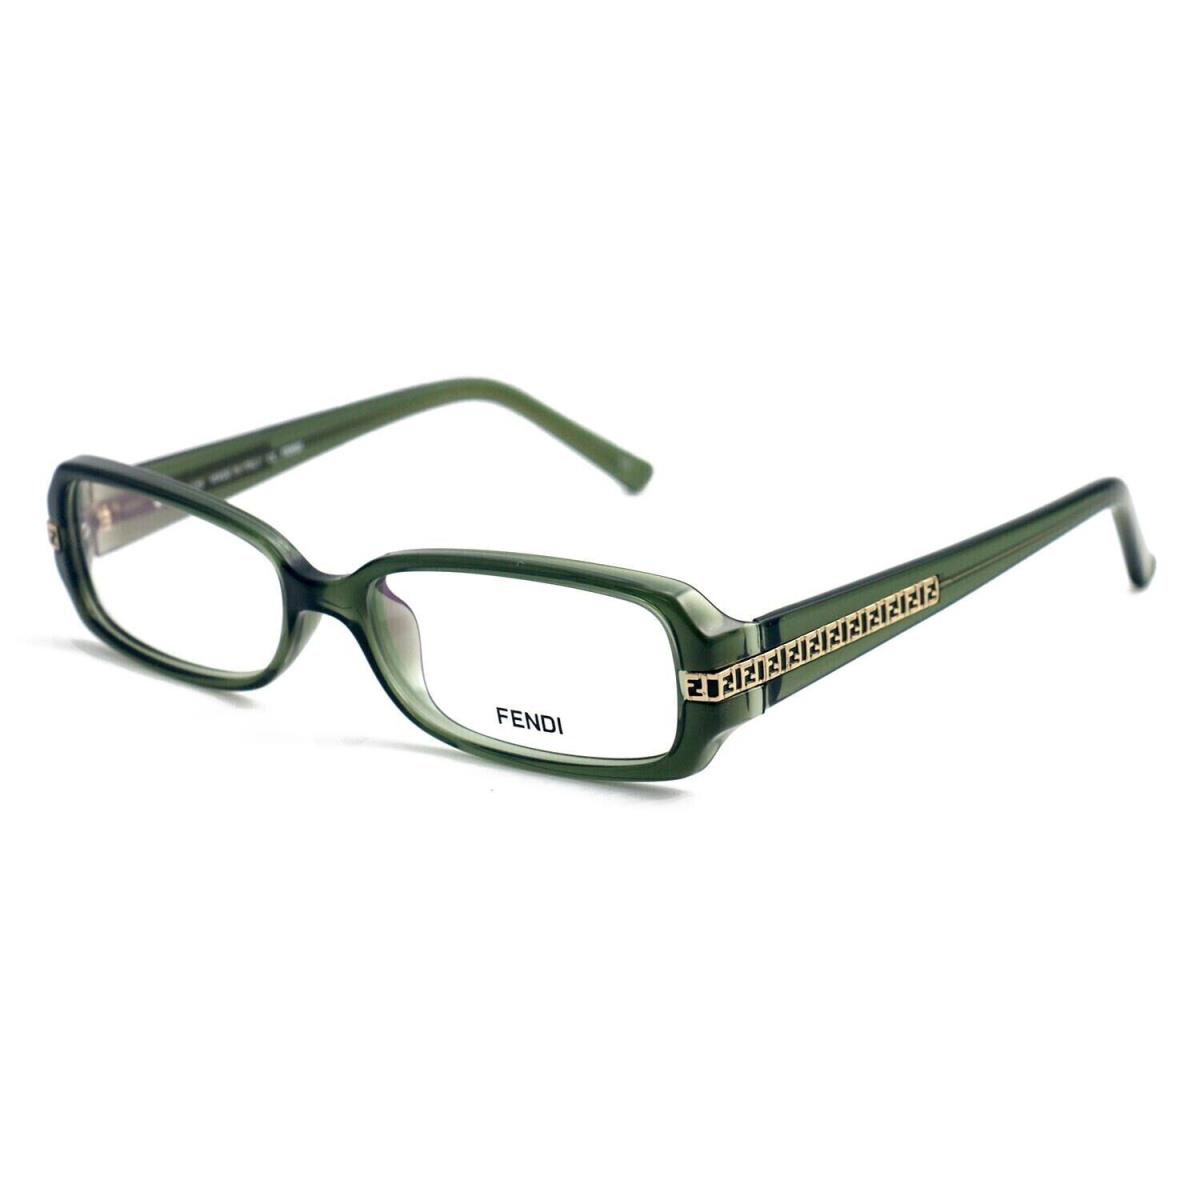 Fendi F932 317 Women Green Full Rim Rectangle Eyeglasses Frames 53 x 15 x 135